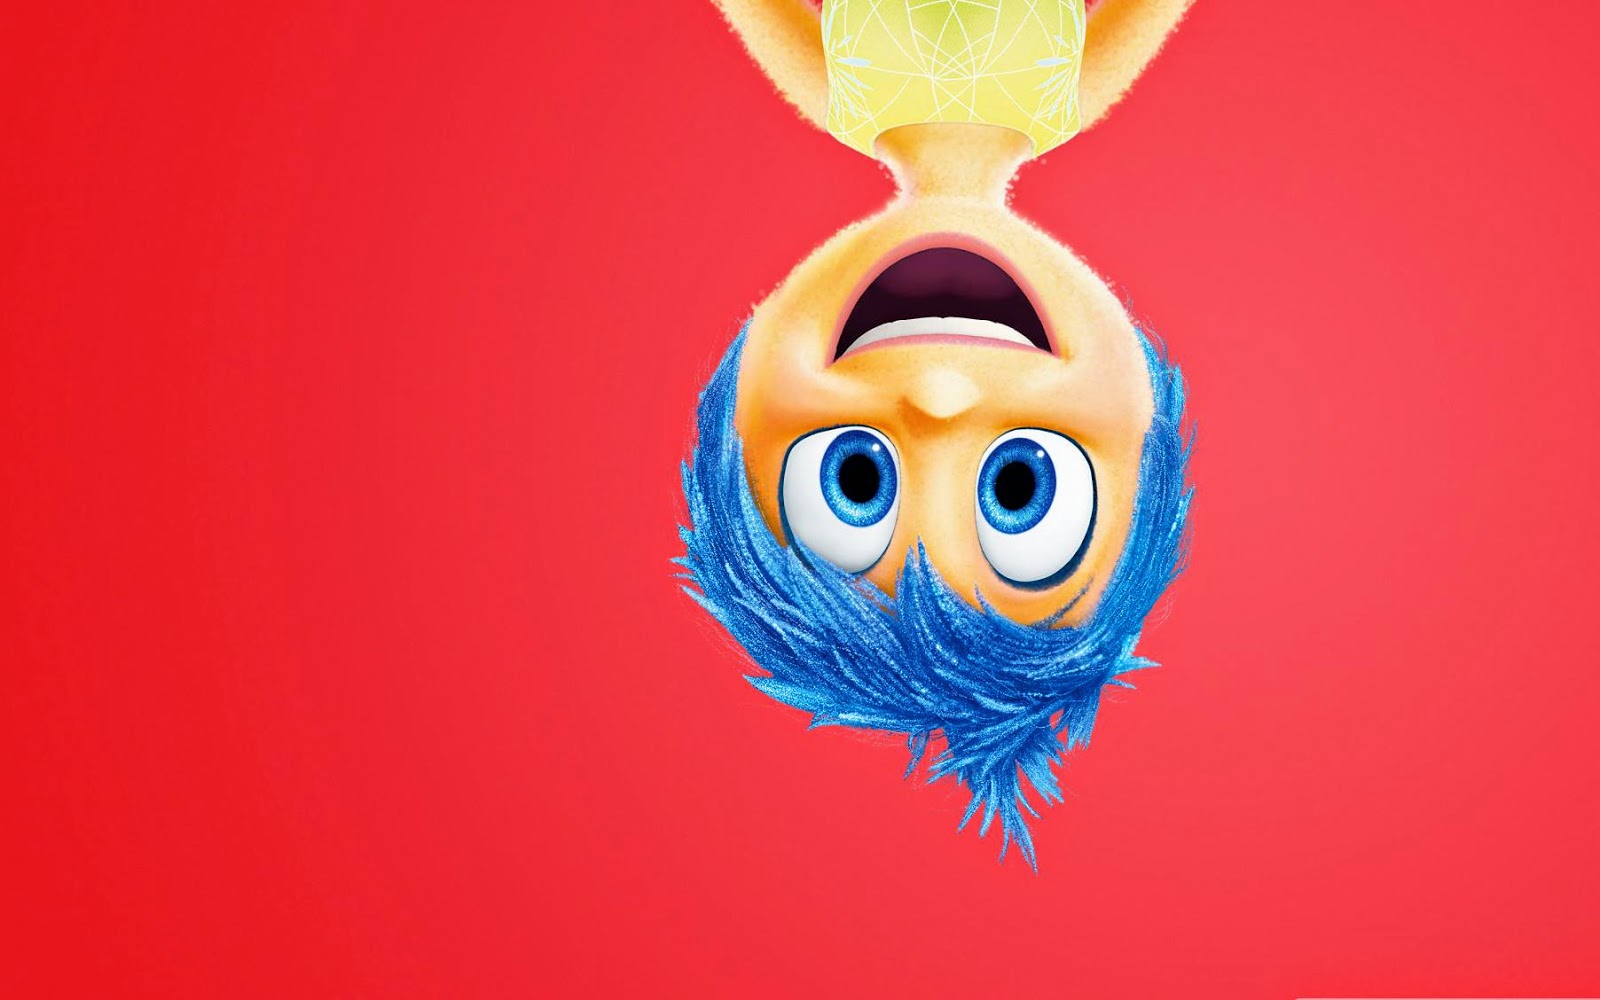 Inside Out Disney Wallpaper HD Pixar Movie Gambar Lucu Terbaru